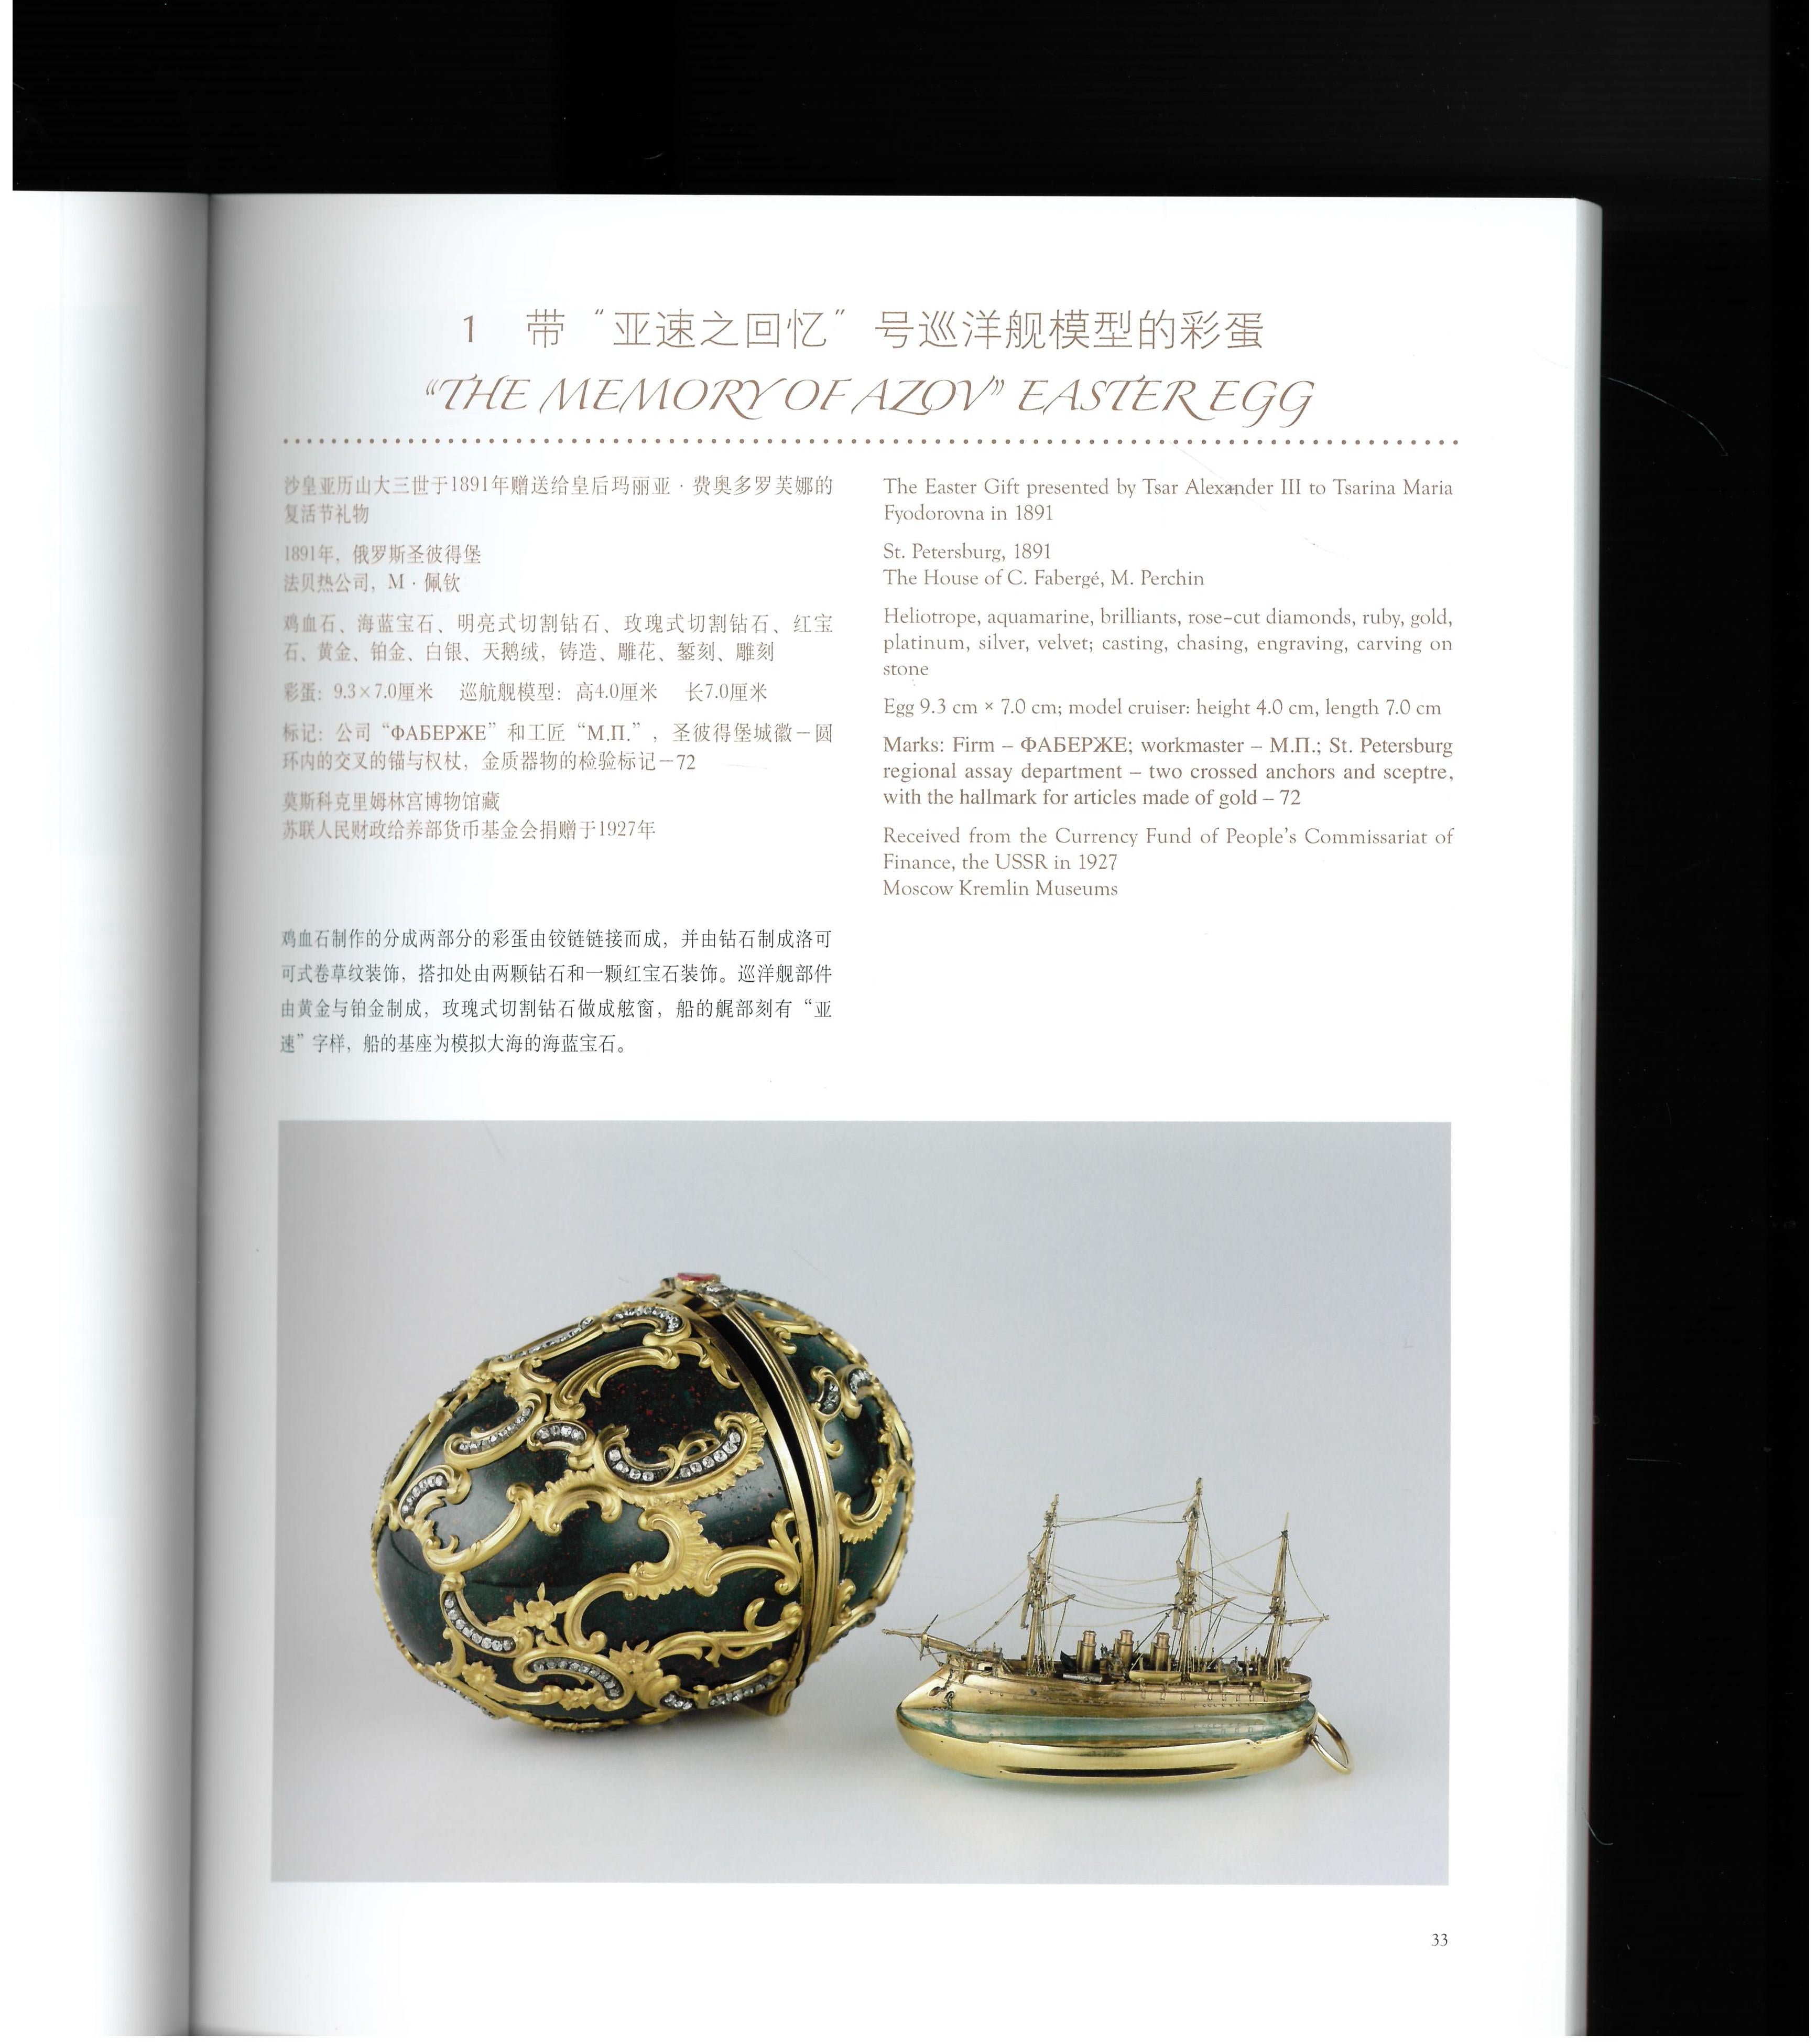 Ce livre est le catalogue d'une exposition d'œuvres de la maison de Carl Faberge qui a eu lieu au Musée de Shanghai pour célébrer le 170e anniversaire de la maison de Carl Faberge. En plus de fournir la famille impériale russe  - notamment avec les